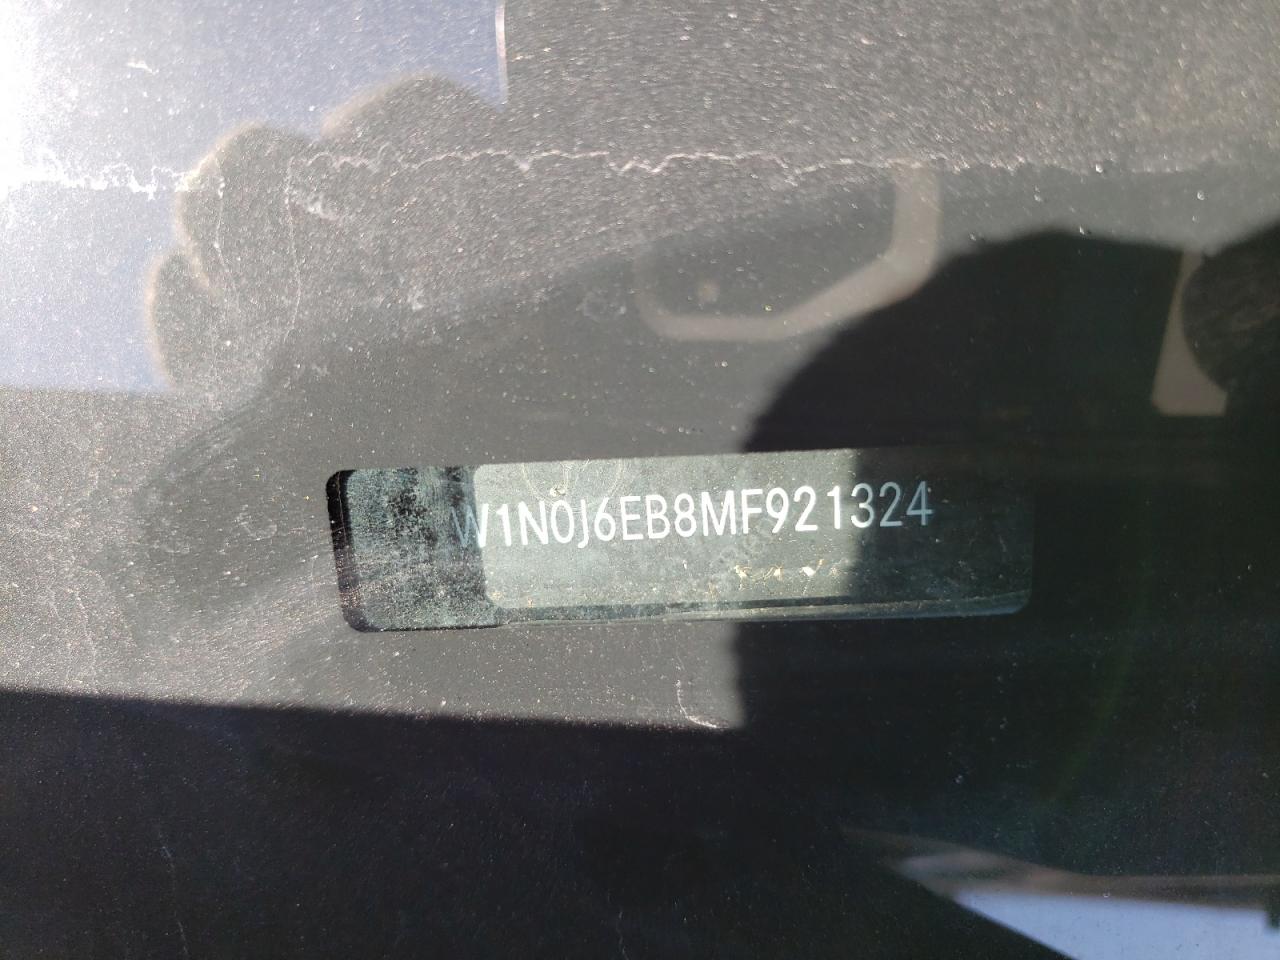 2021 Mercedes-Benz Glc Coupe 43 4Matic Amg vin: W1N0J6EB8MF921324